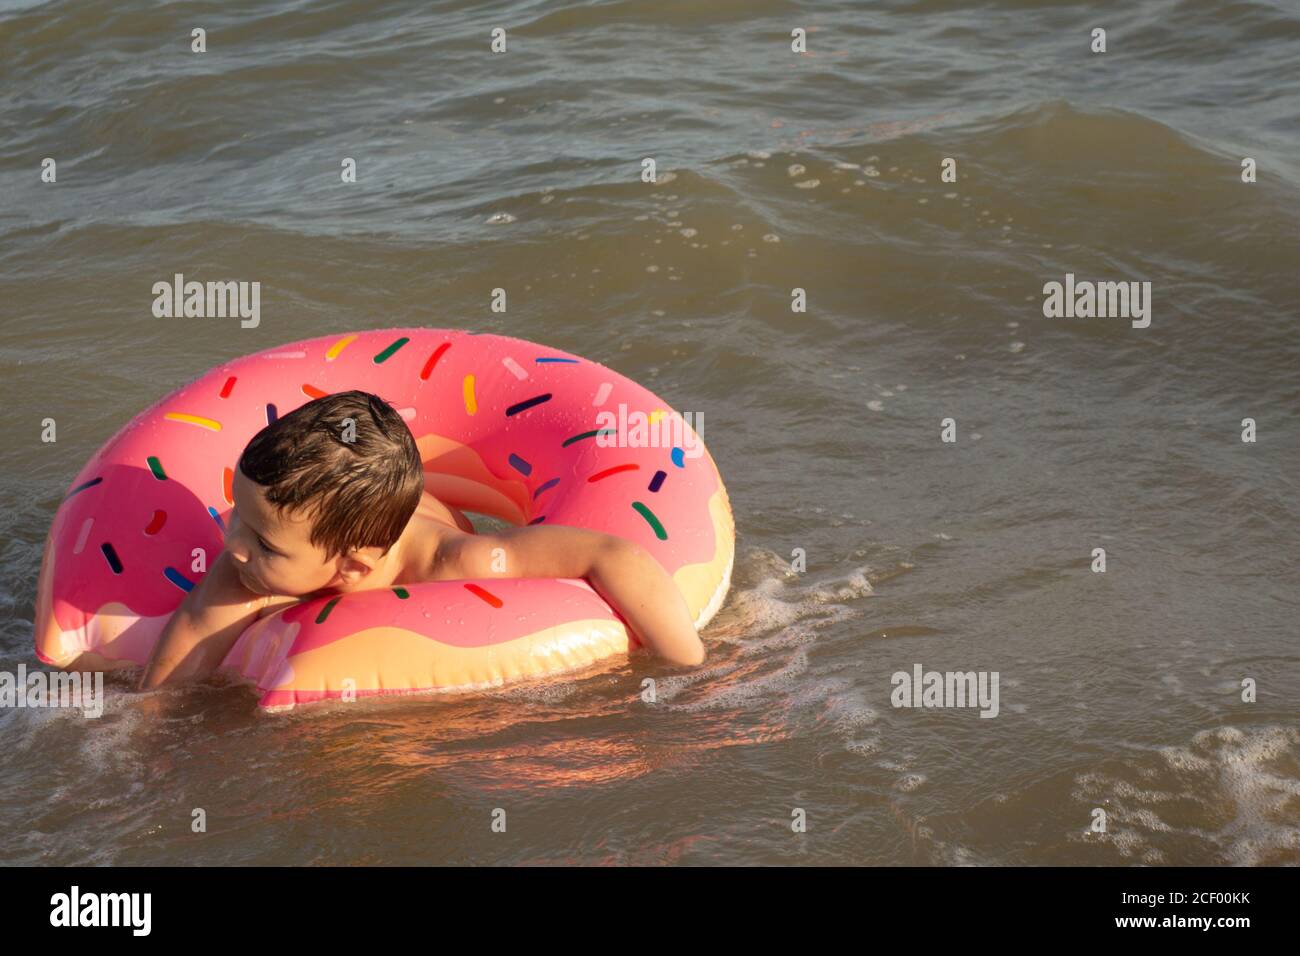 Un ragazzo di 5 anni nuota in mare, si rallegra e si diverte in un anello gonfiabile a forma di ciambella. Foto Stock